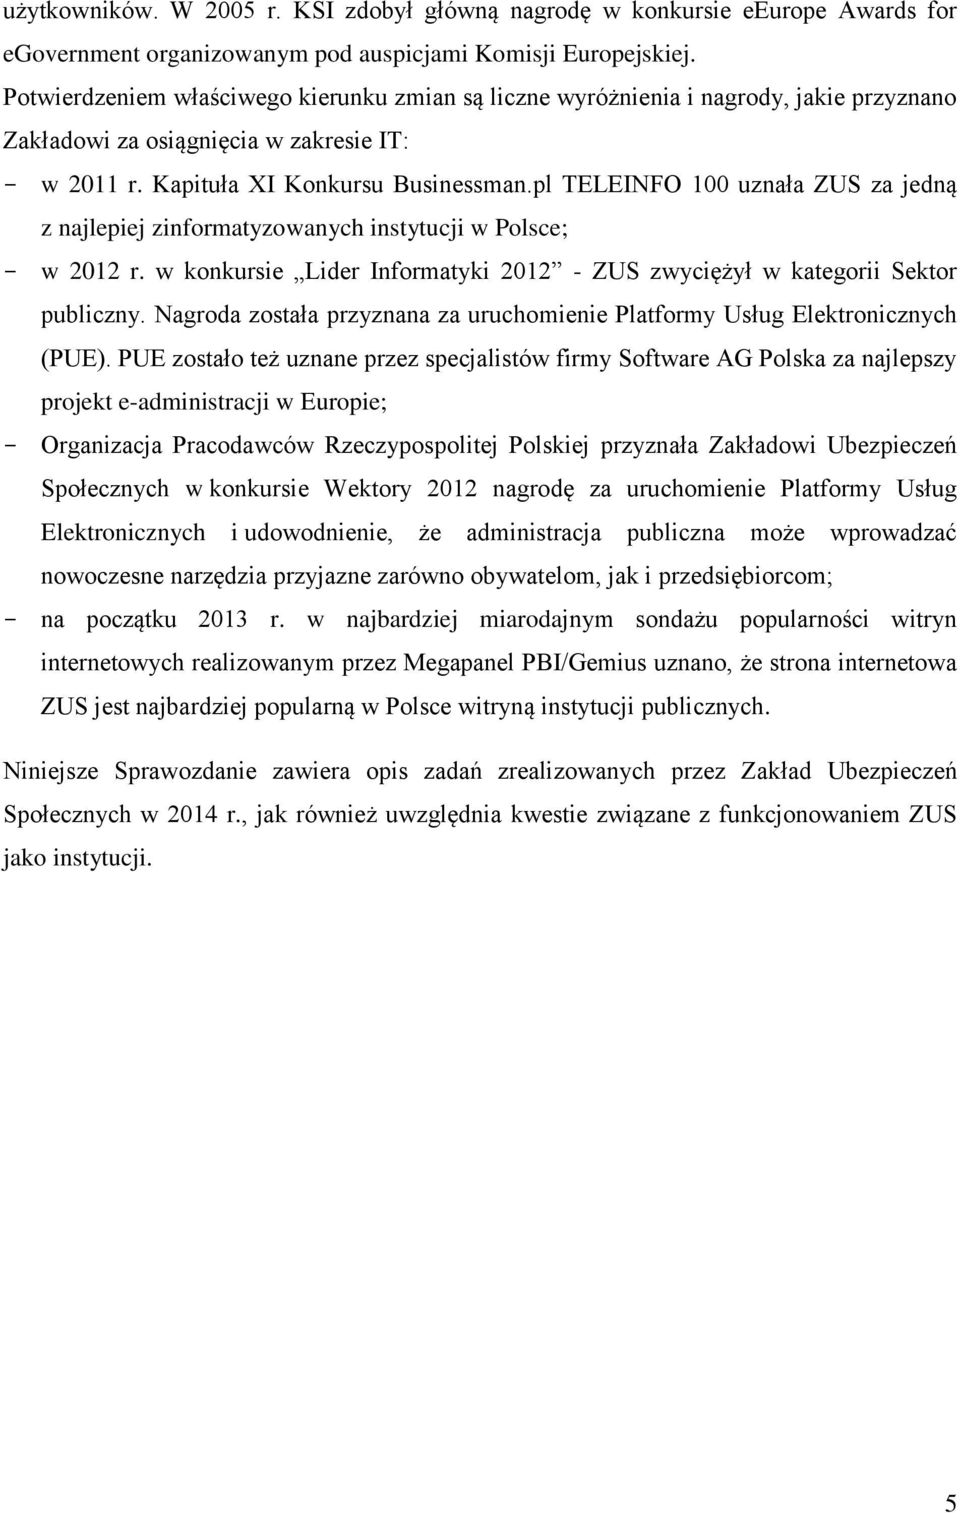 pl TELEINFO 100 uznała ZUS za jedną z najlepiej zinformatyzowanych instytucji w Polsce; w 2012 r. w konkursie Lider Informatyki 2012 - ZUS zwyciężył w kategorii Sektor publiczny.